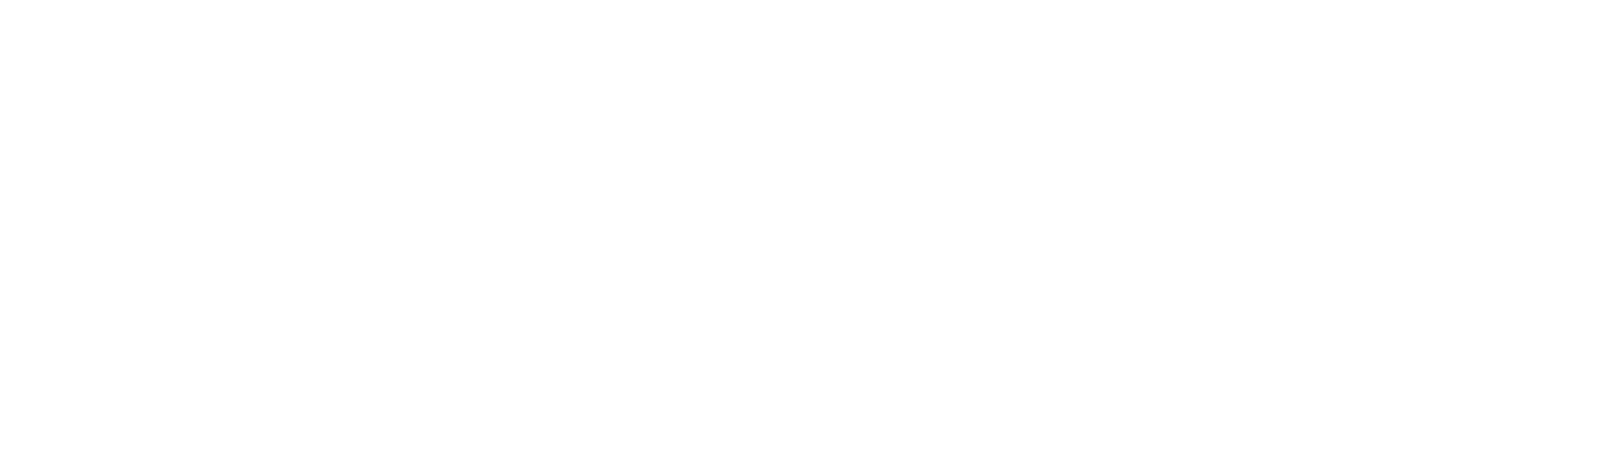 Sonendo logo large for dark backgrounds (transparent PNG)